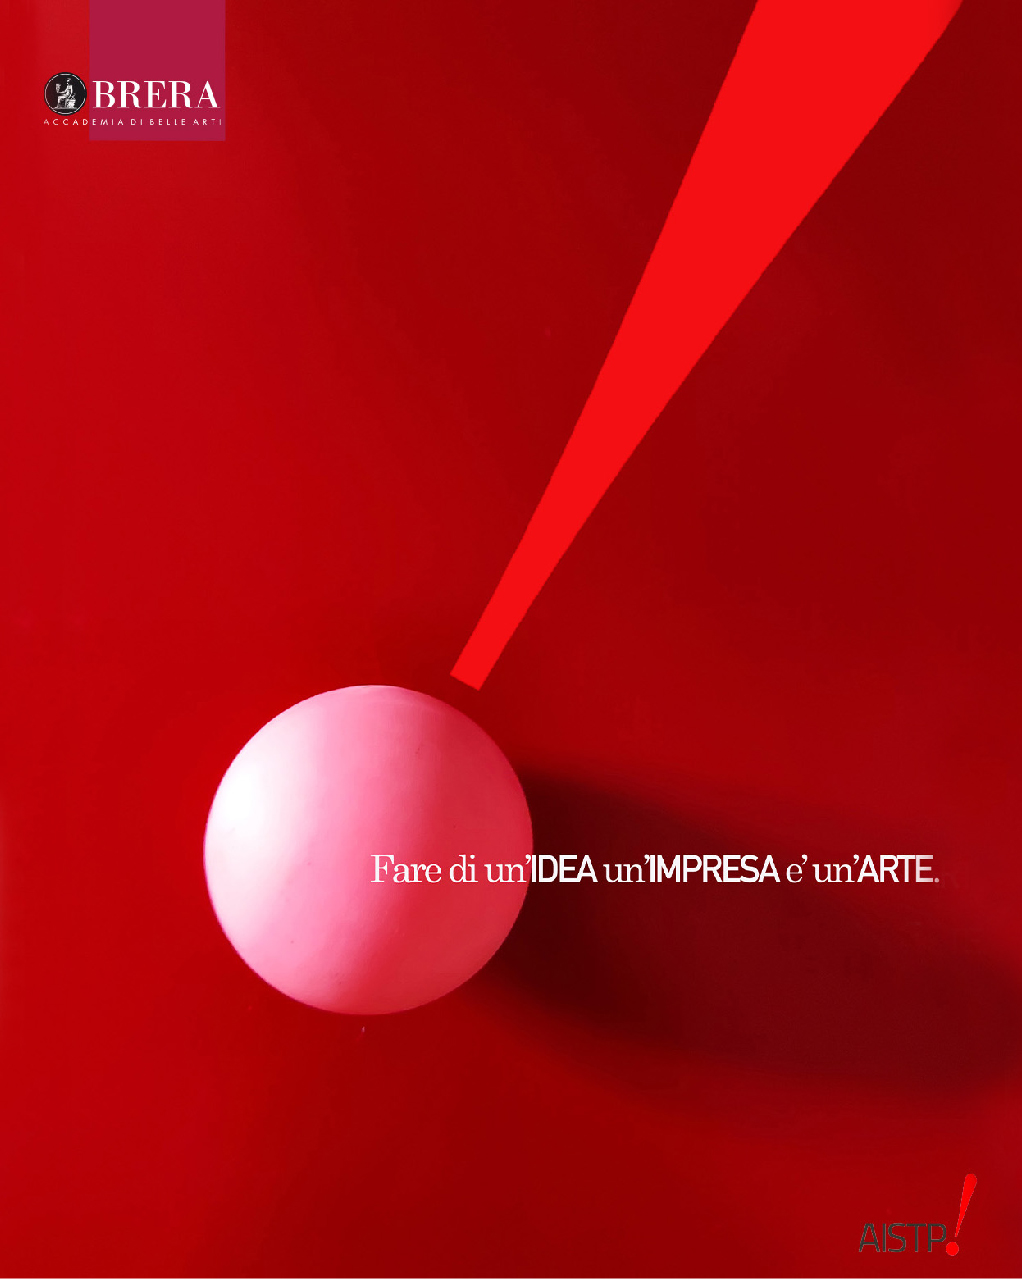 Immagine astratta rossa con una sfera illuminata